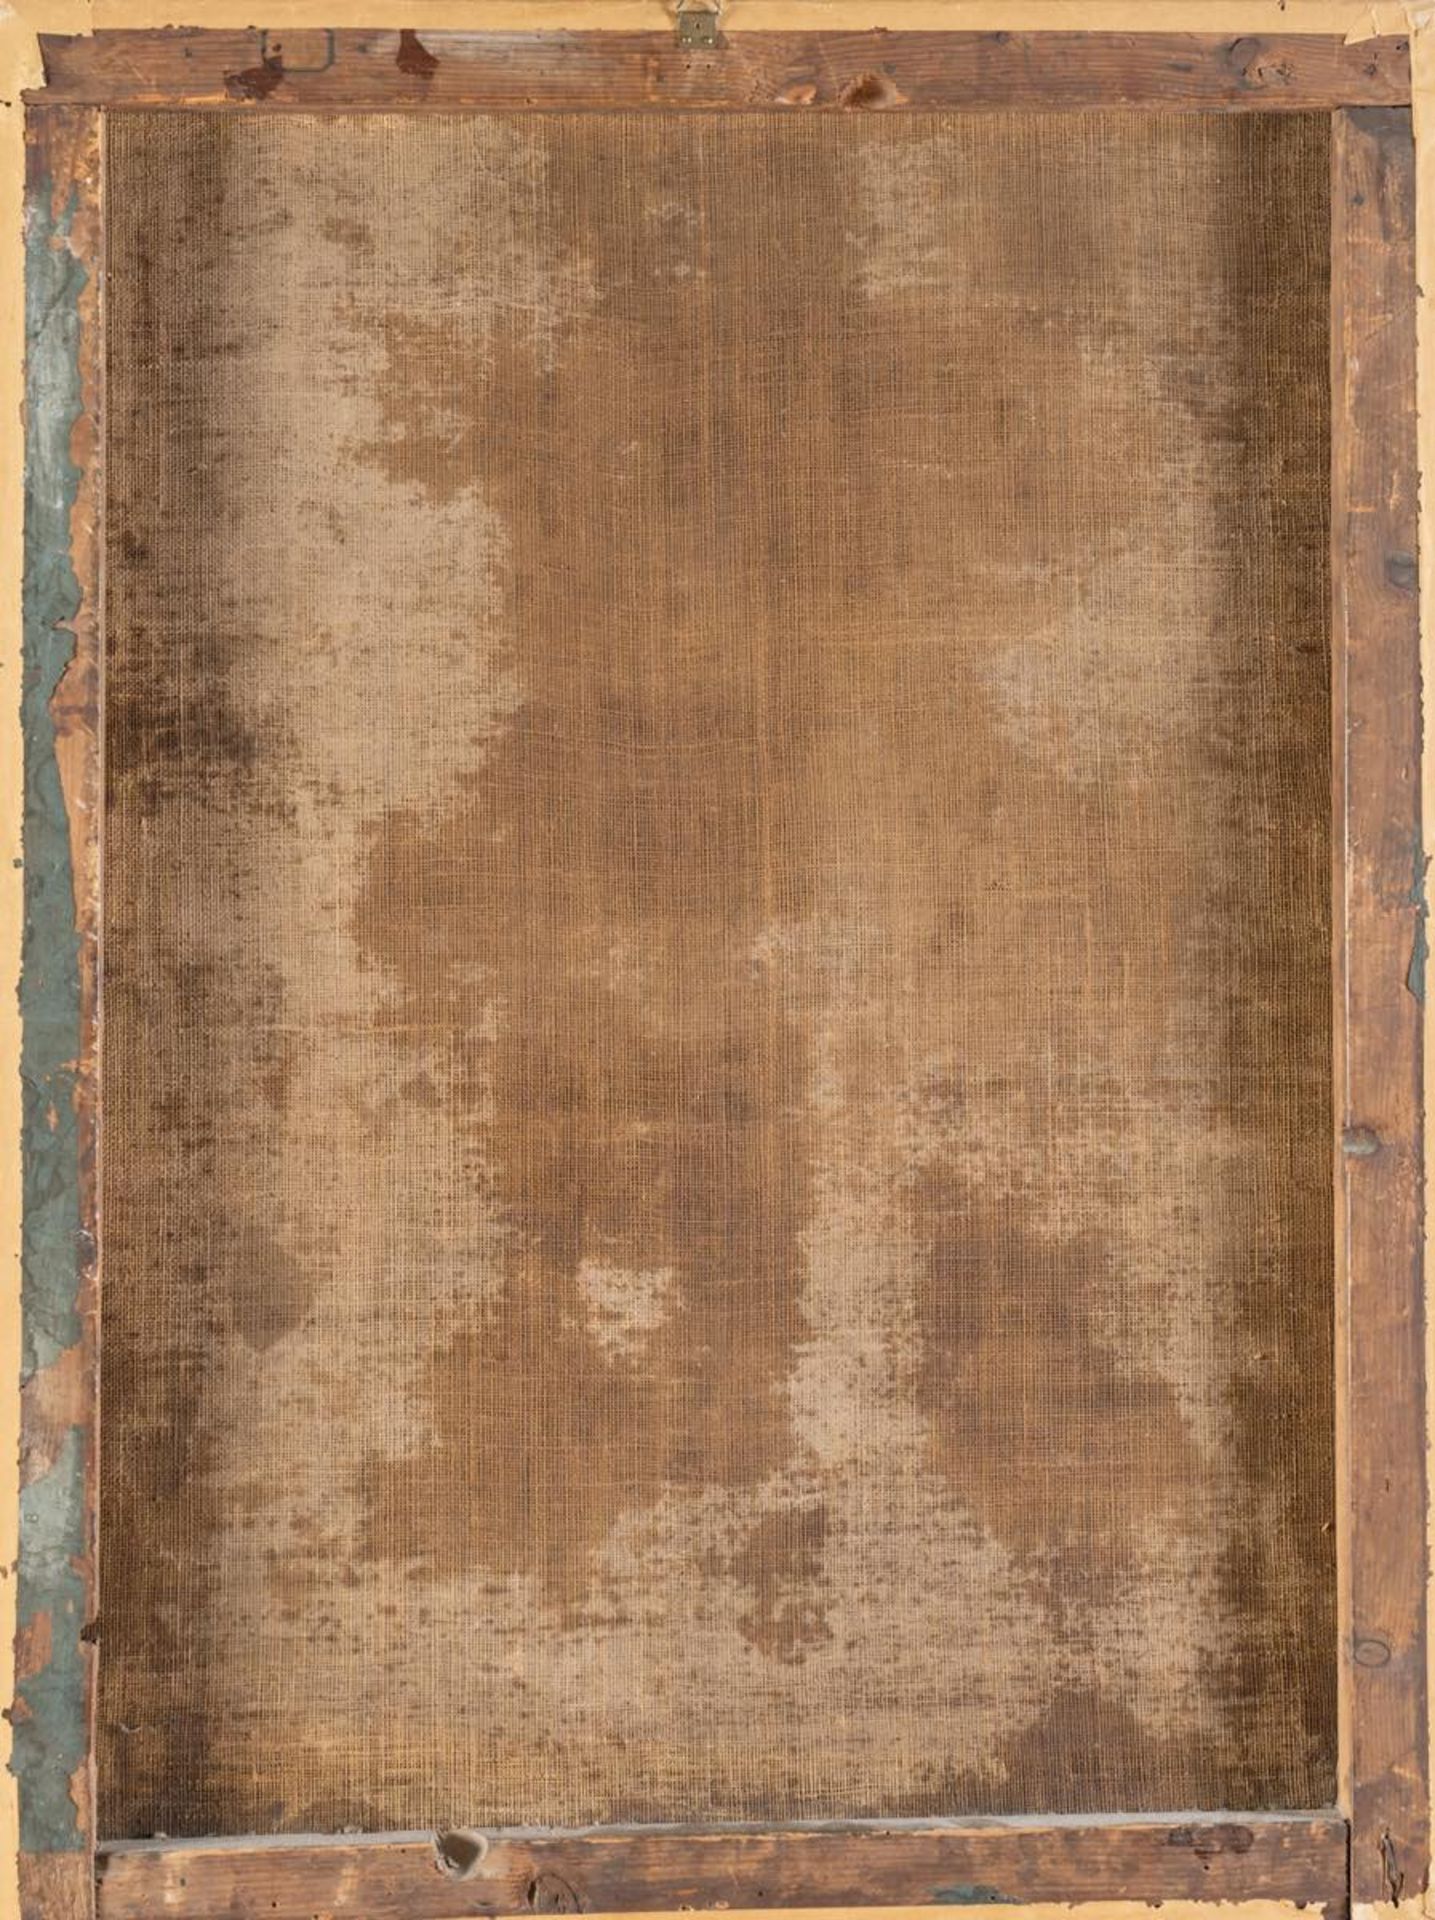 Maestro Toscano del XVII secolo “Scena di Vita di Cristo”. Olio su tela, H cm 82.5x62.5 - Bild 2 aus 2